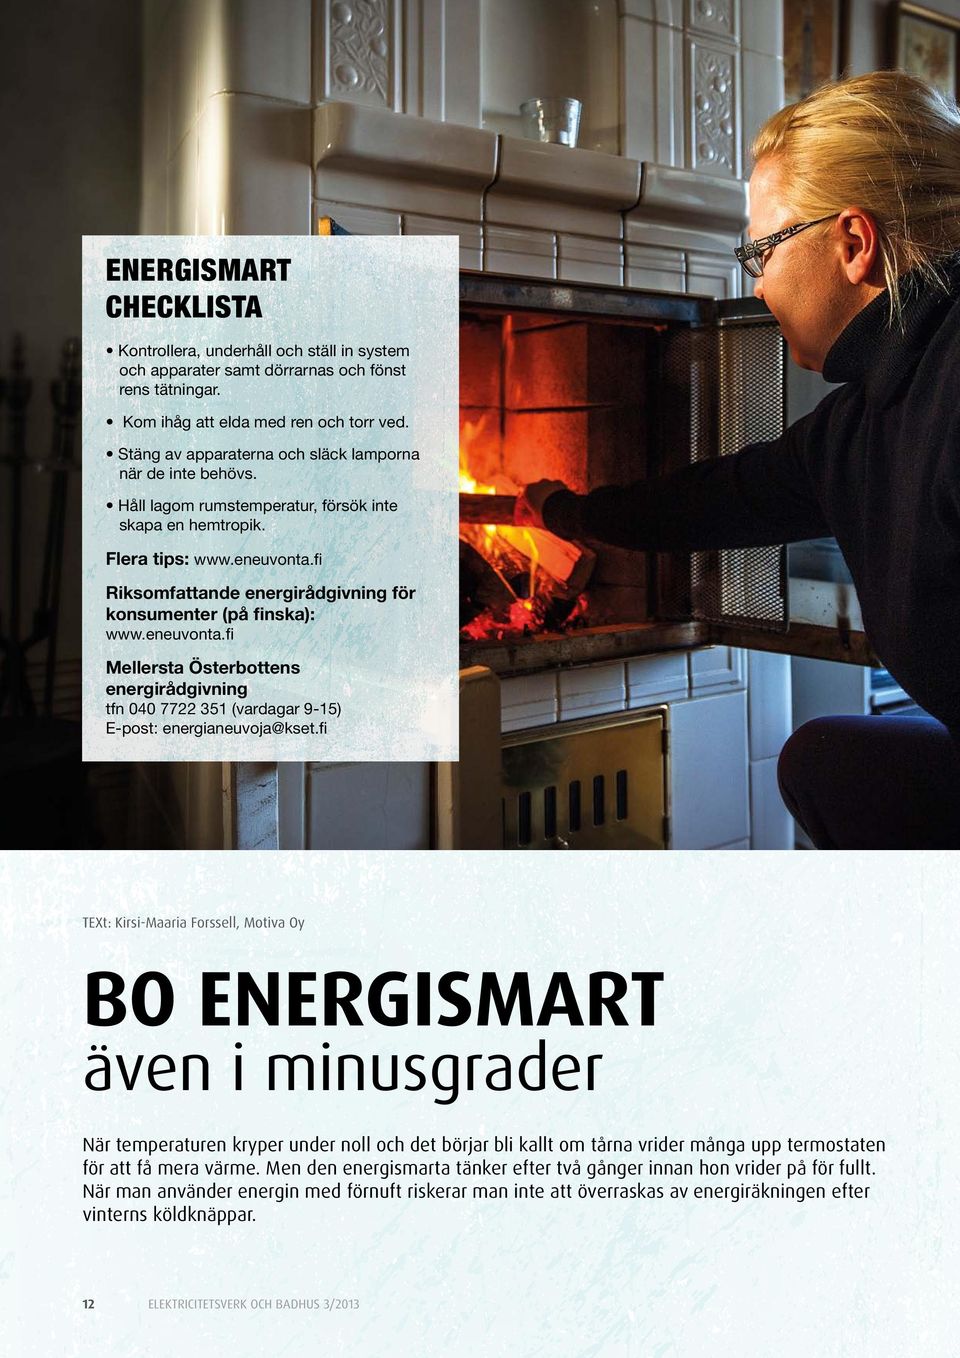 fi Riksomfattande energirådgivning för konsumenter (på finska): www.eneuvonta.fi Mellersta Österbottens energirådgivning tfn 040 7722 351 (vardagar 9-15) E-post: energianeuvoja@kset.